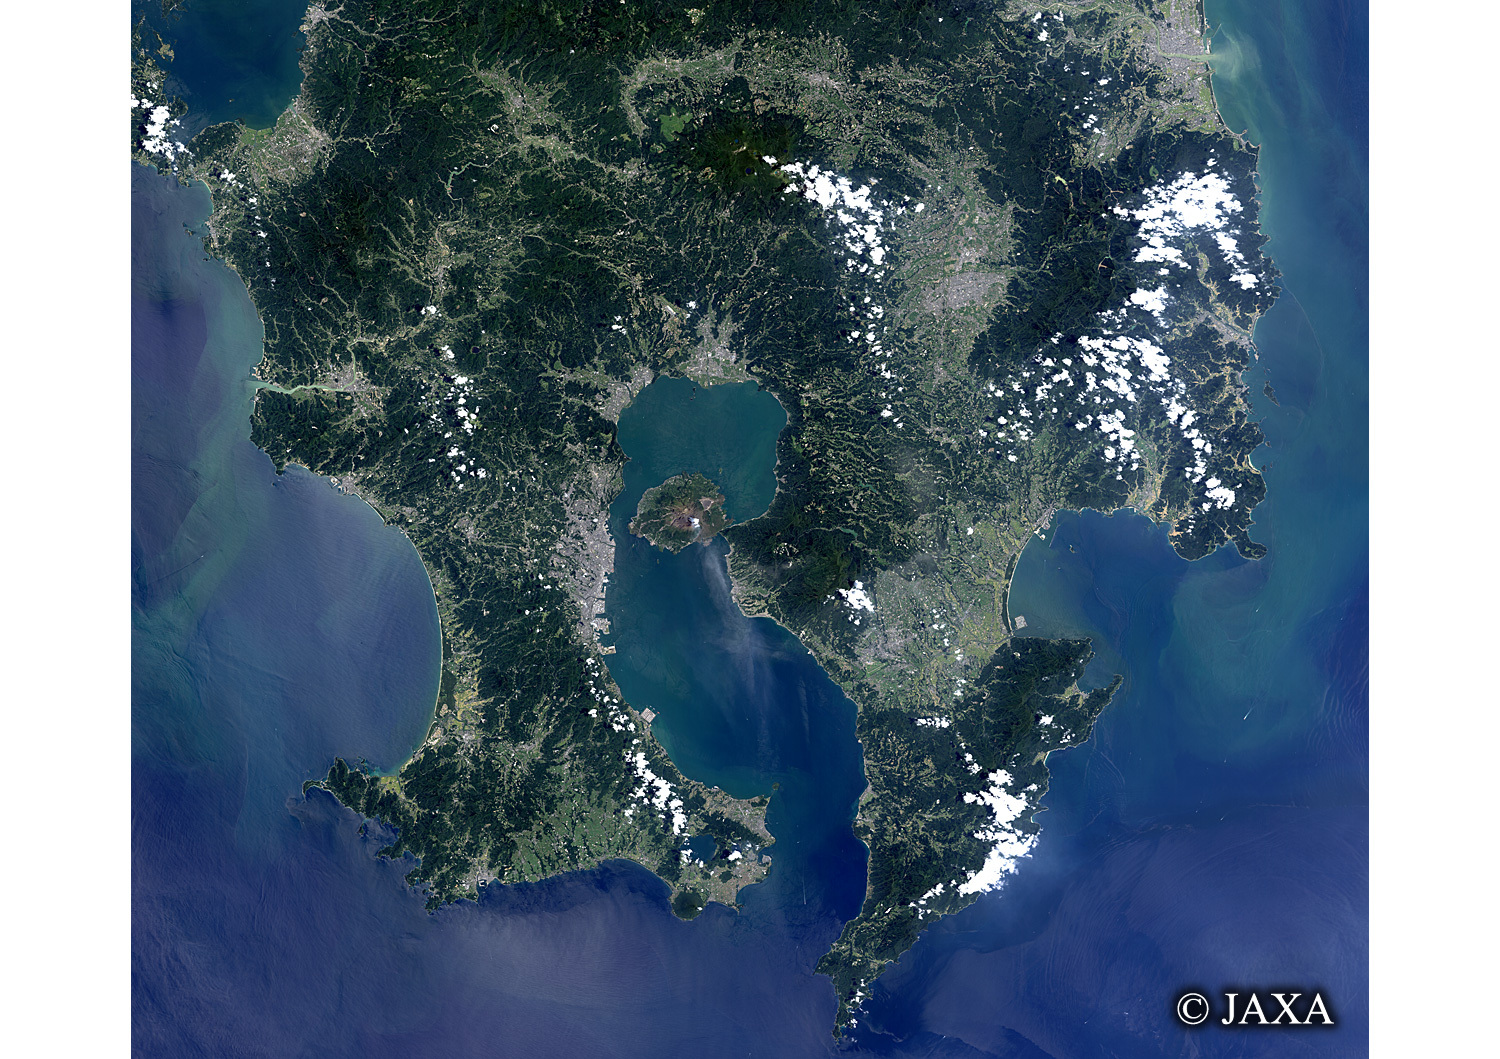 だいちから見た日本の都市 桜島:衛星画像